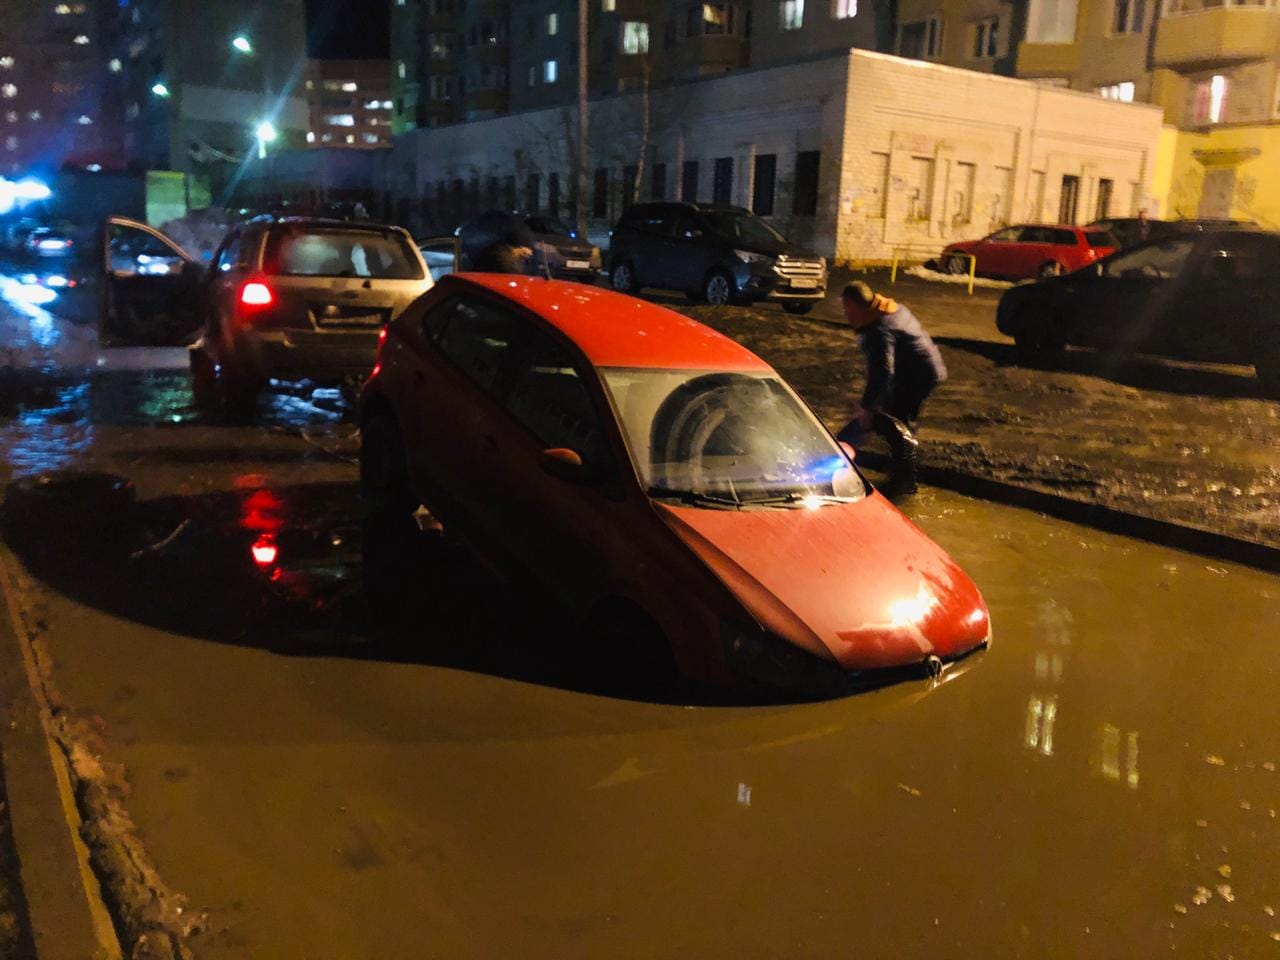 Море по колено, а лужа по уши: в Ярославле коварная яма продолжает калечить автомобили